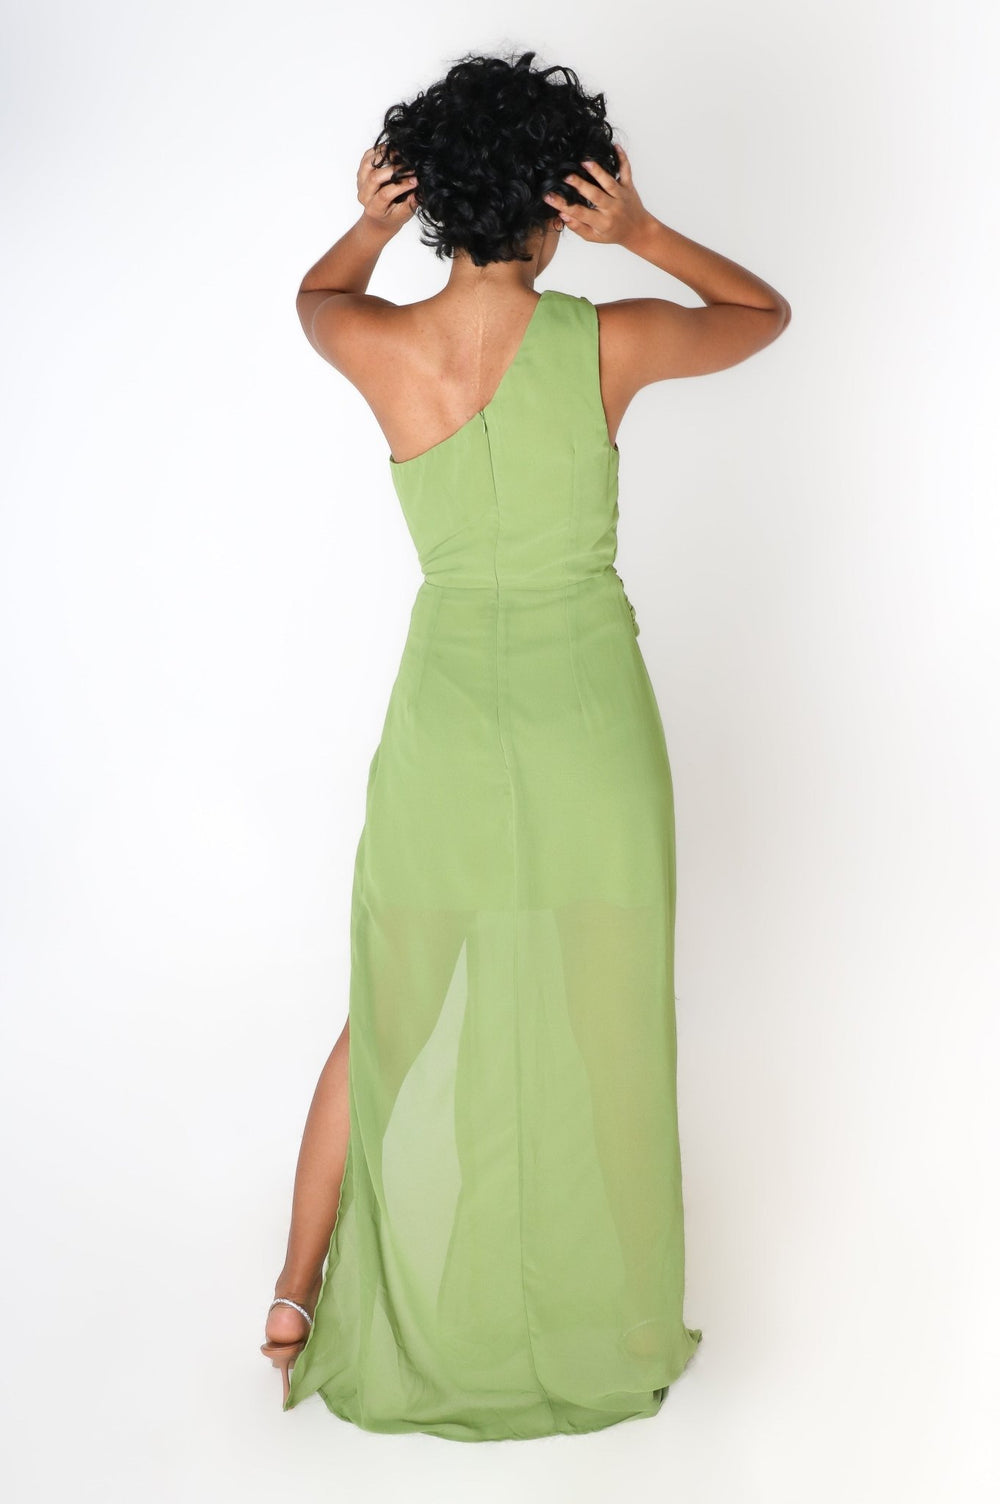 Layla - verde - Lend the Trend renta de vestidos mexico